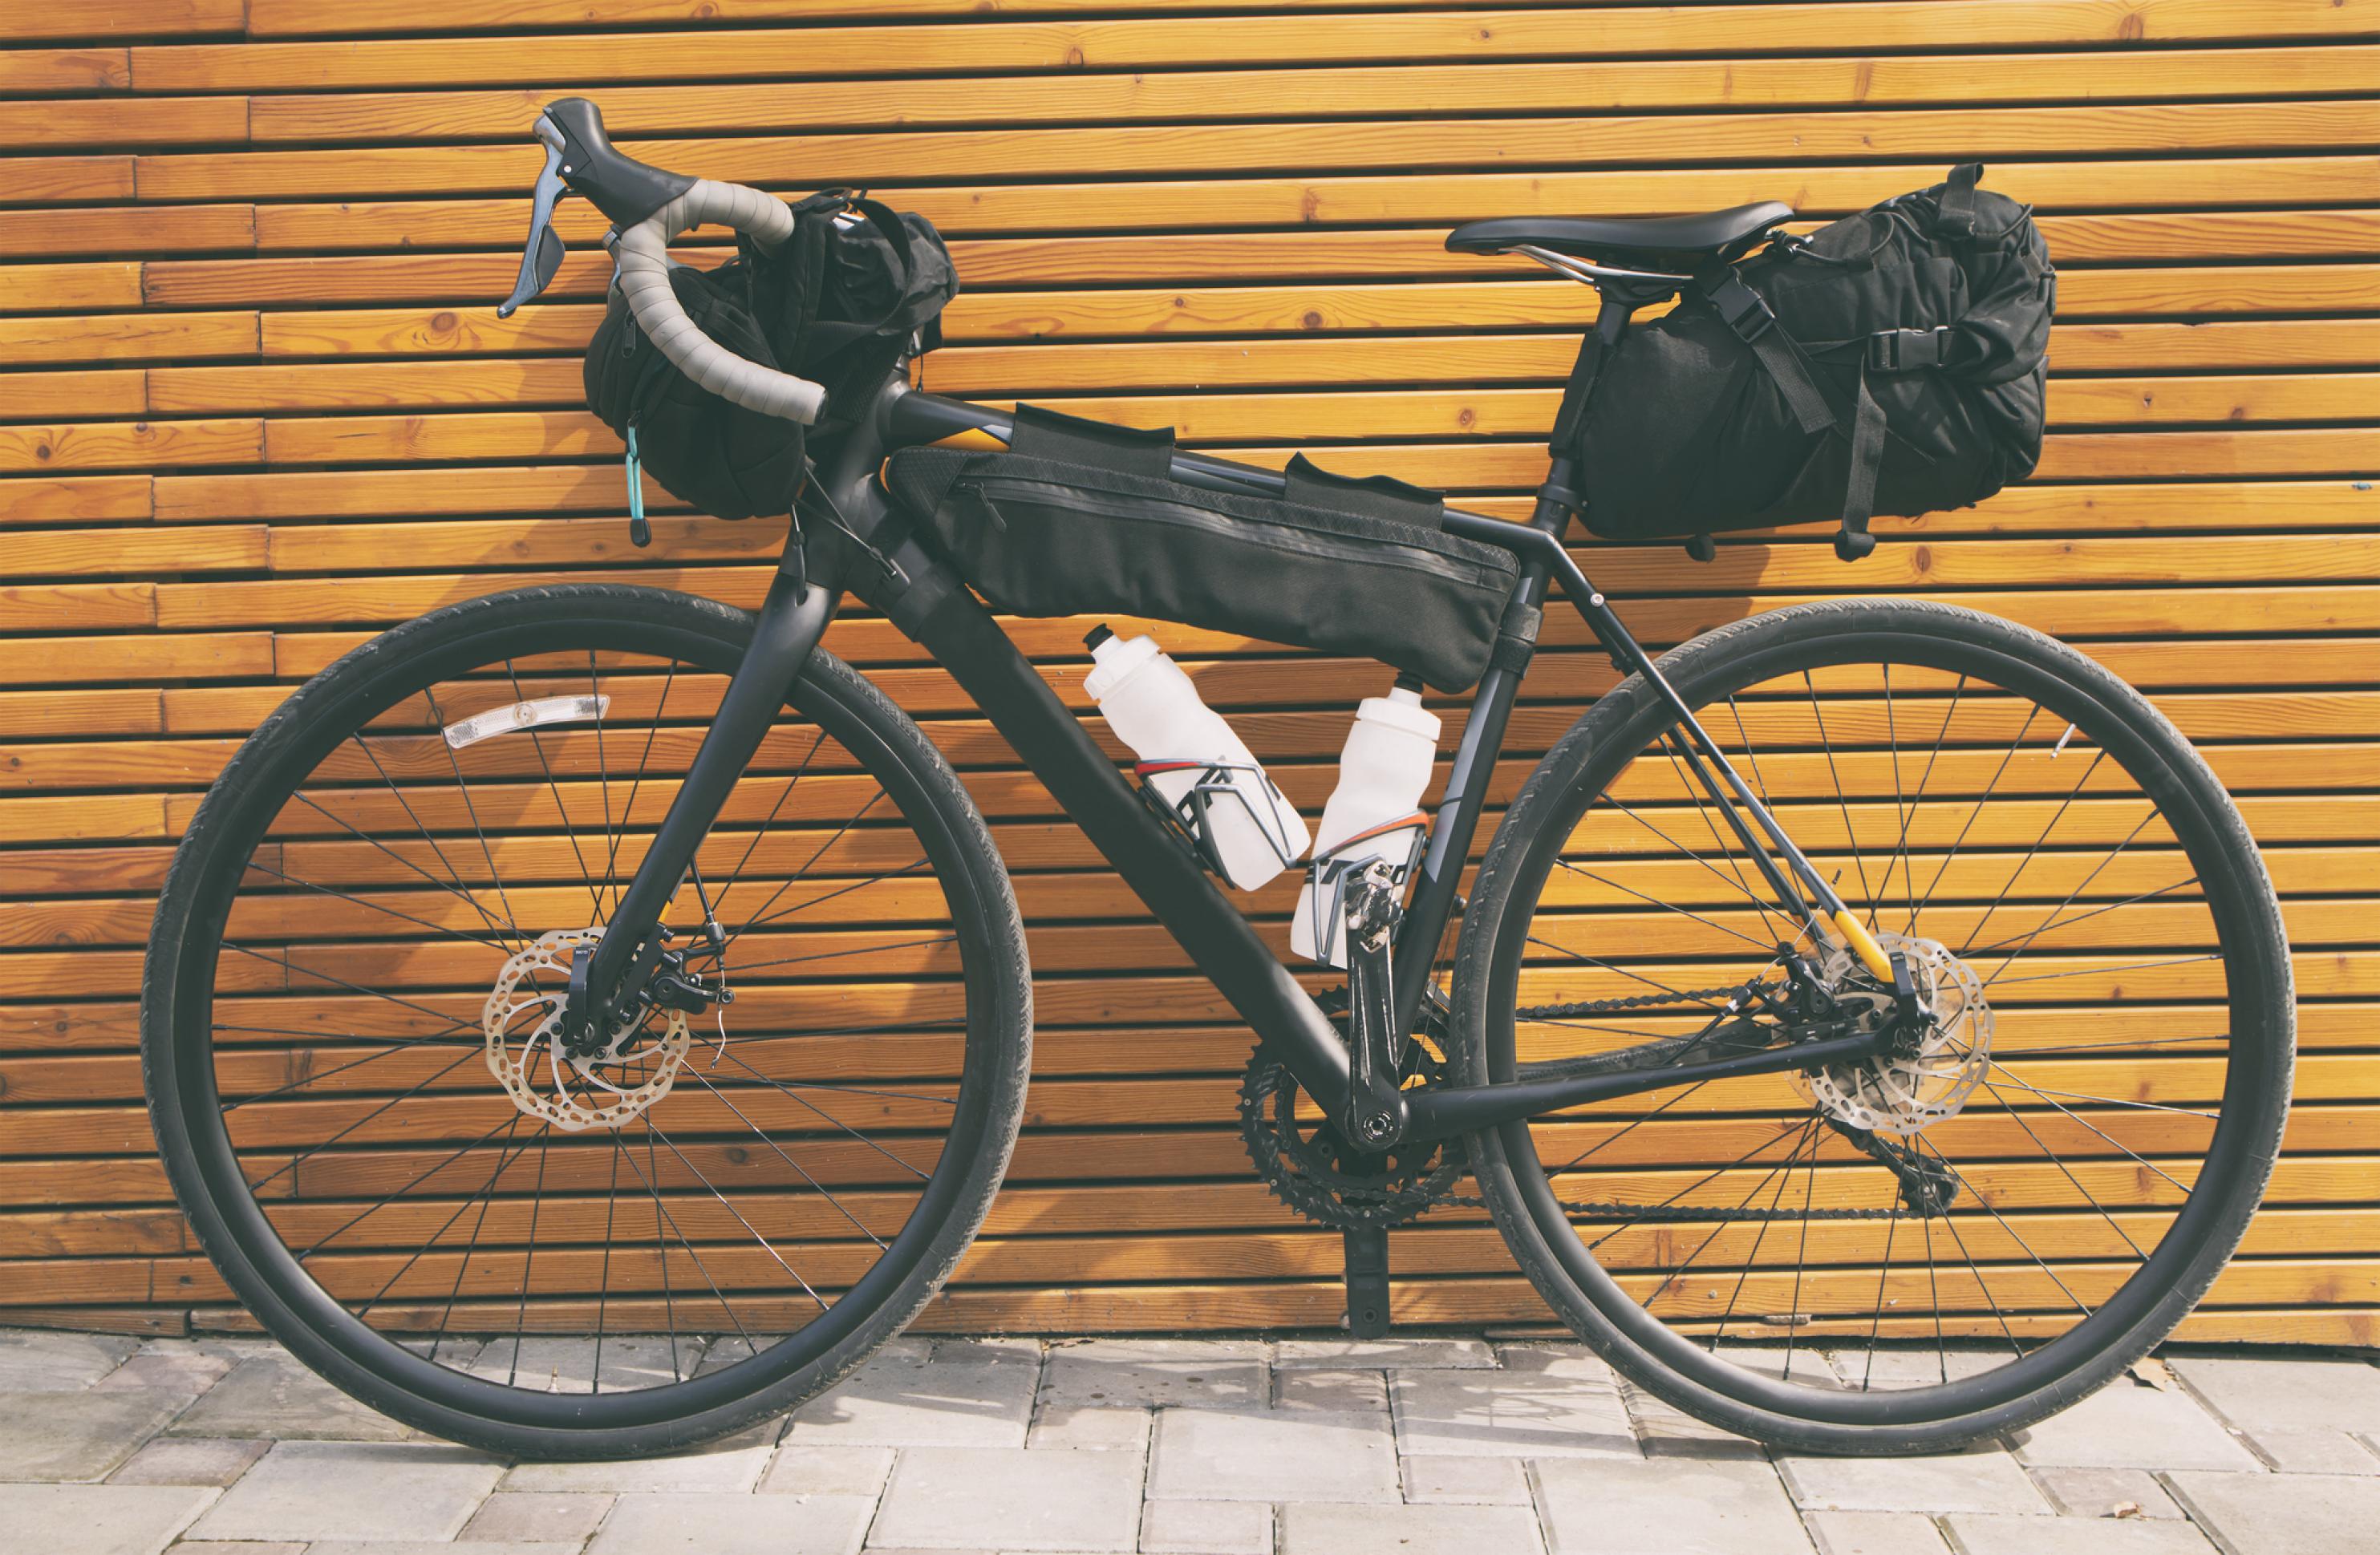 An einer Hilzwand lehnt ein vollbepacktes Fahrrad mit zwei gefüllten Wasserflaschen. Sowohl Lenker als auch Querstang und Sattelstütze tragen Packtaschen.